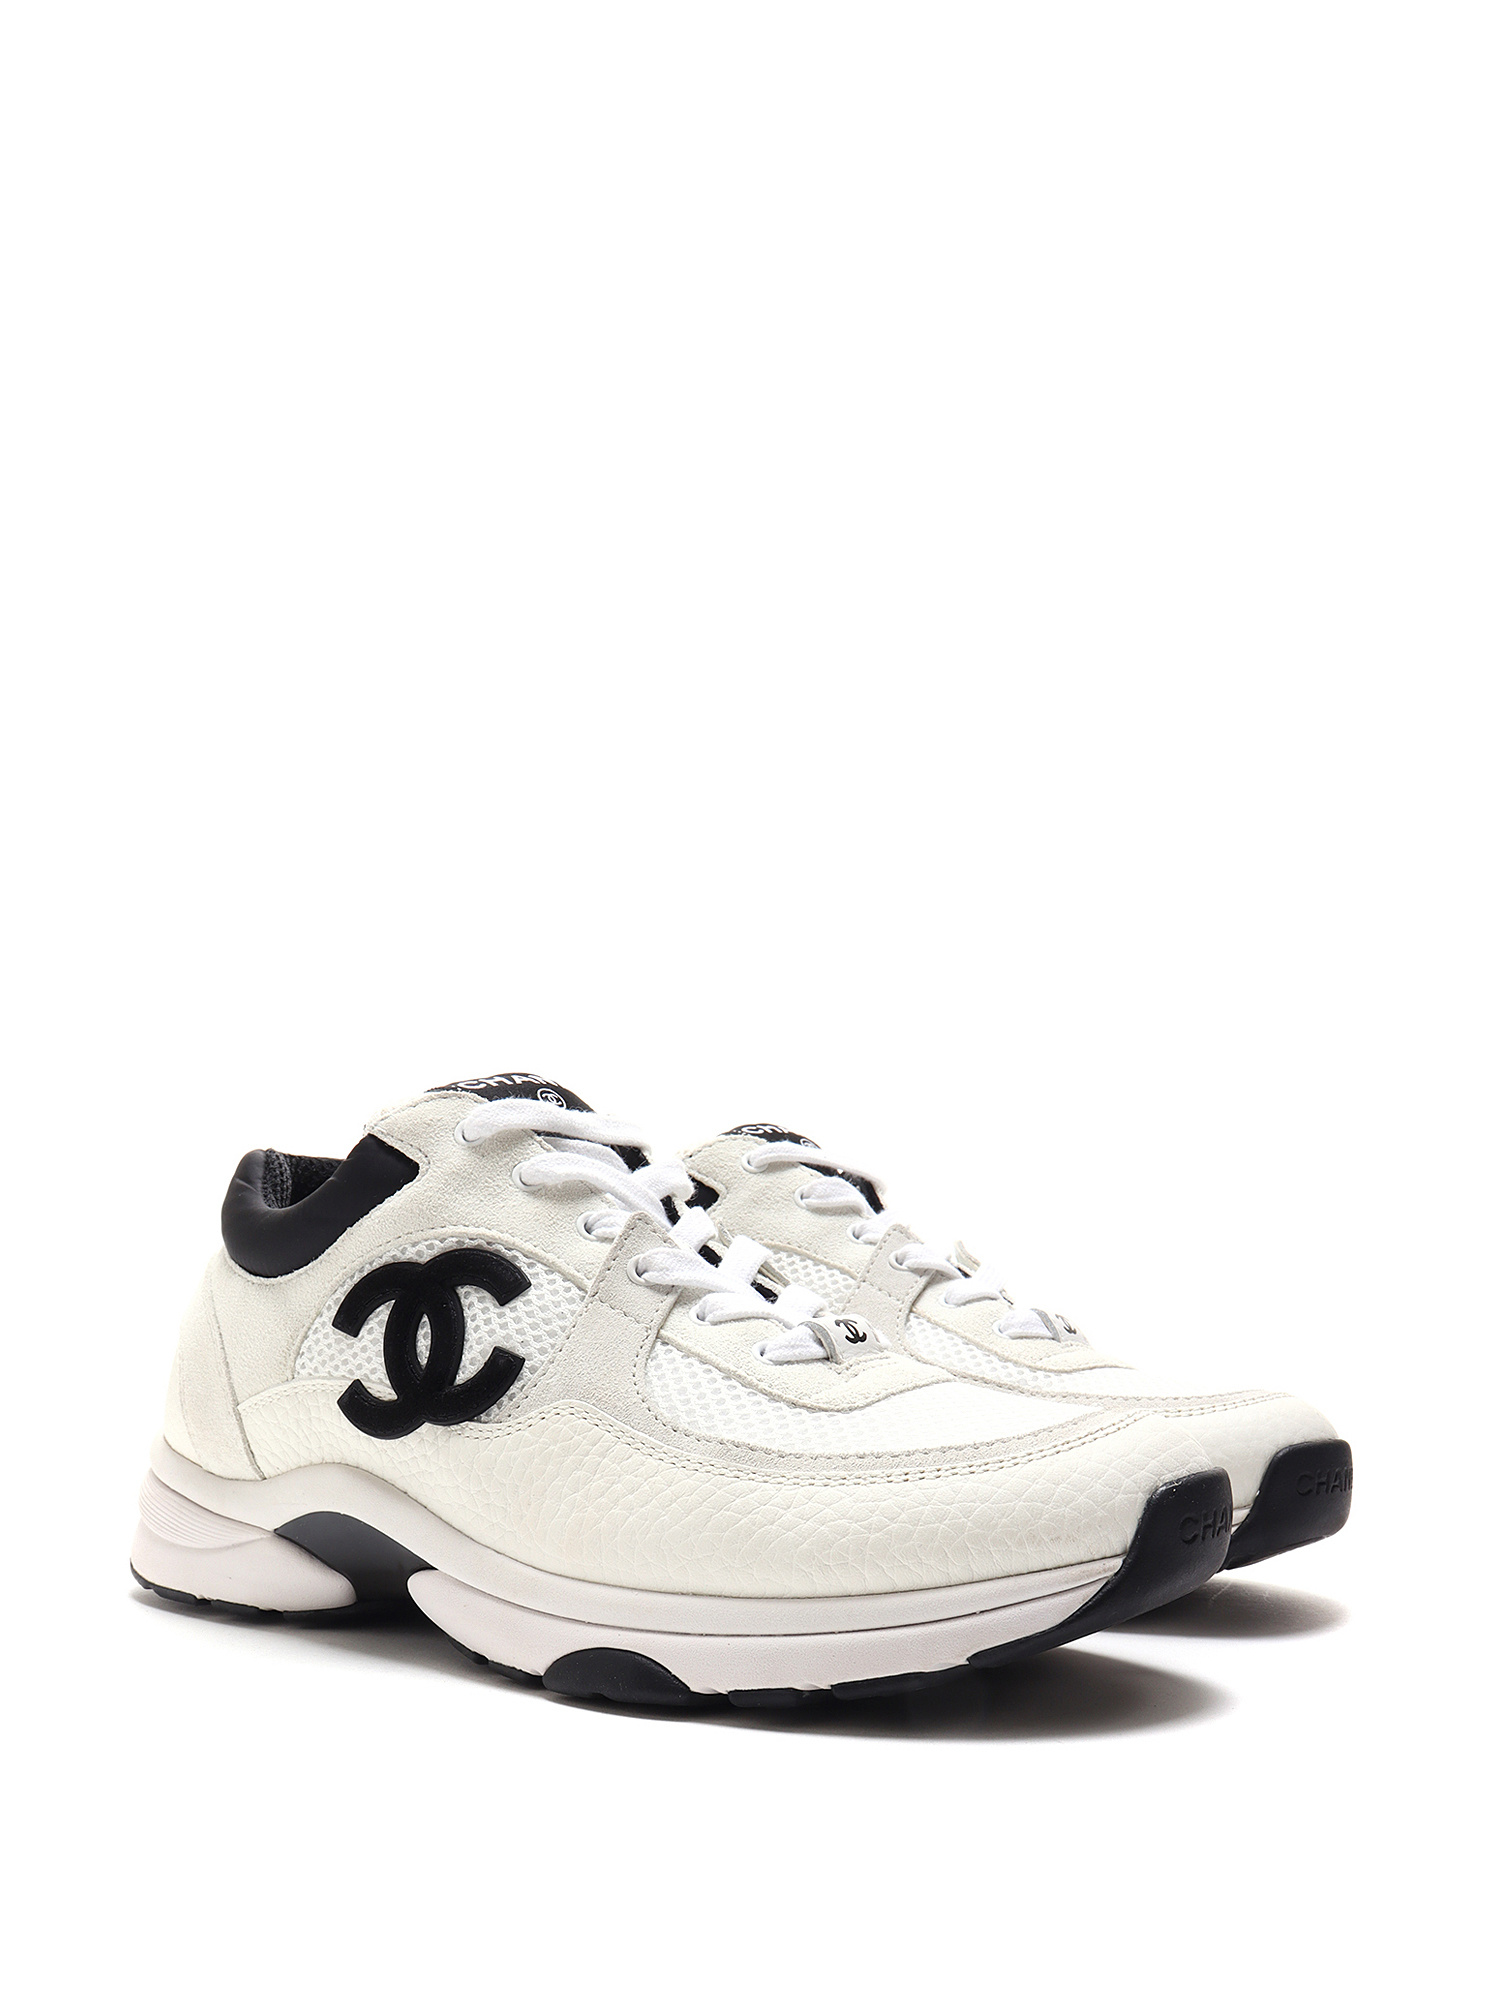 Chanel 22S White Ivory Beige Black CC Logo Tie Flat Runner Trainer Sneaker  405  eBay